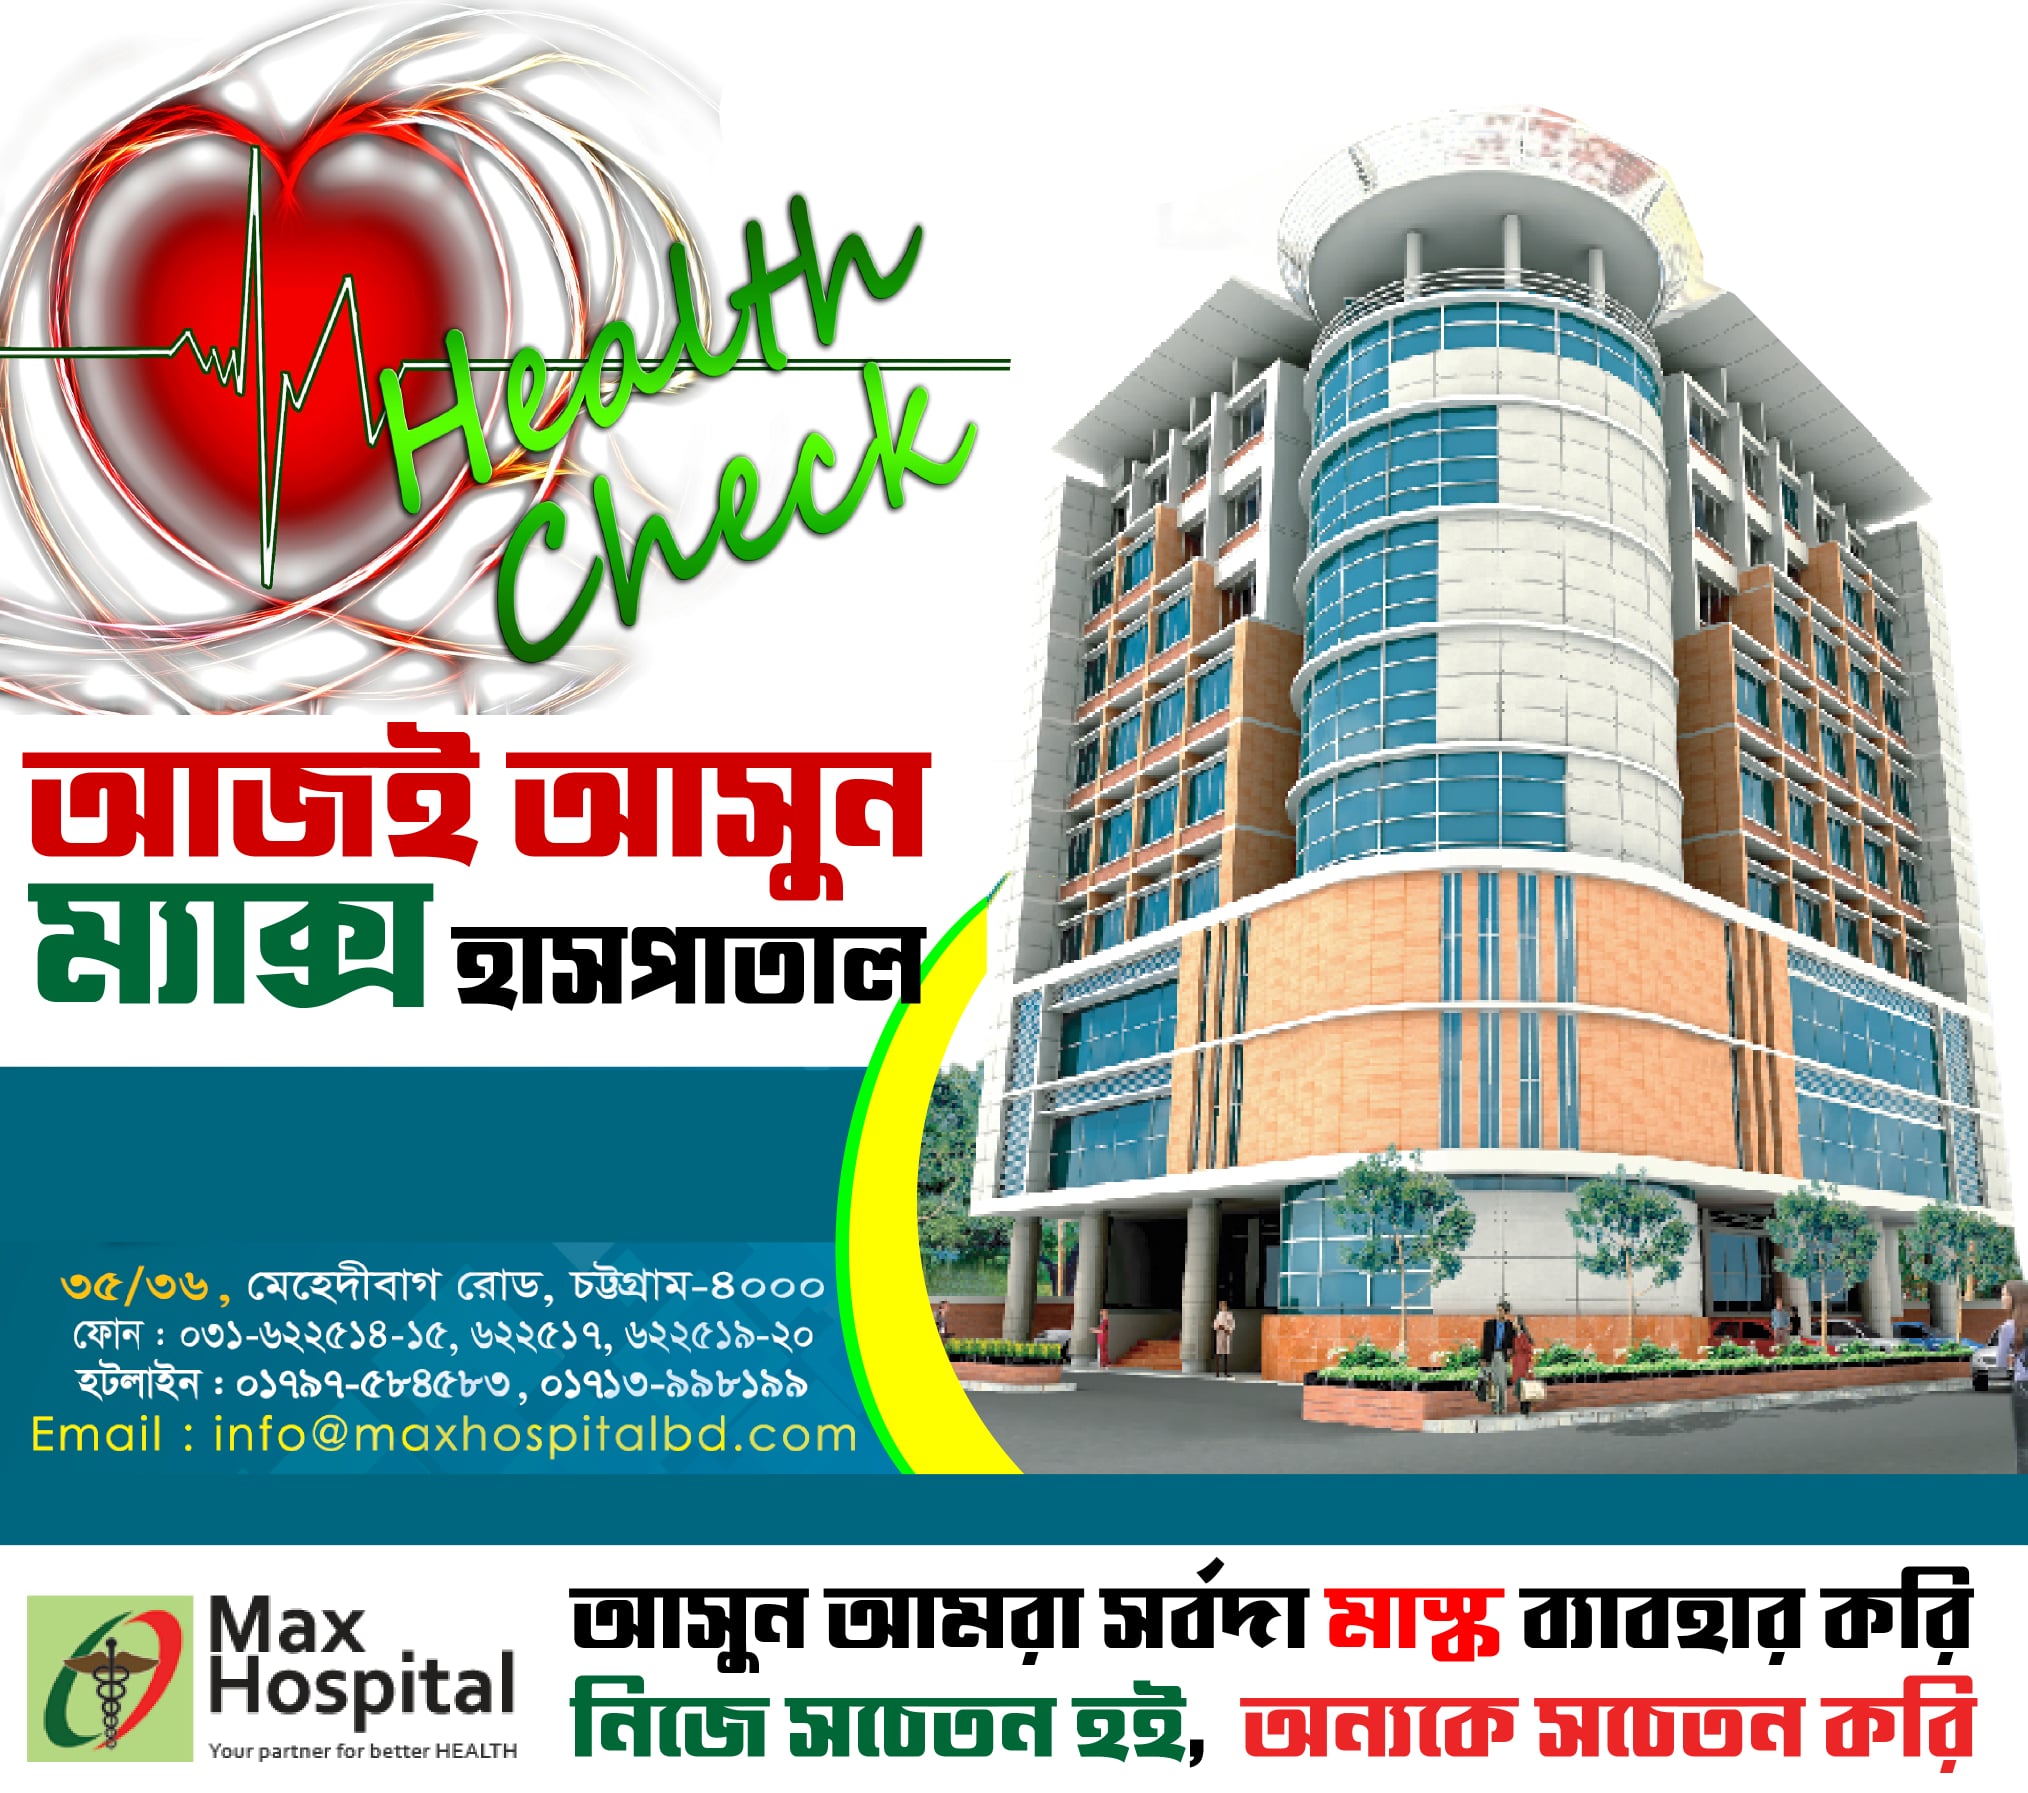 Max Hospital Chittagong